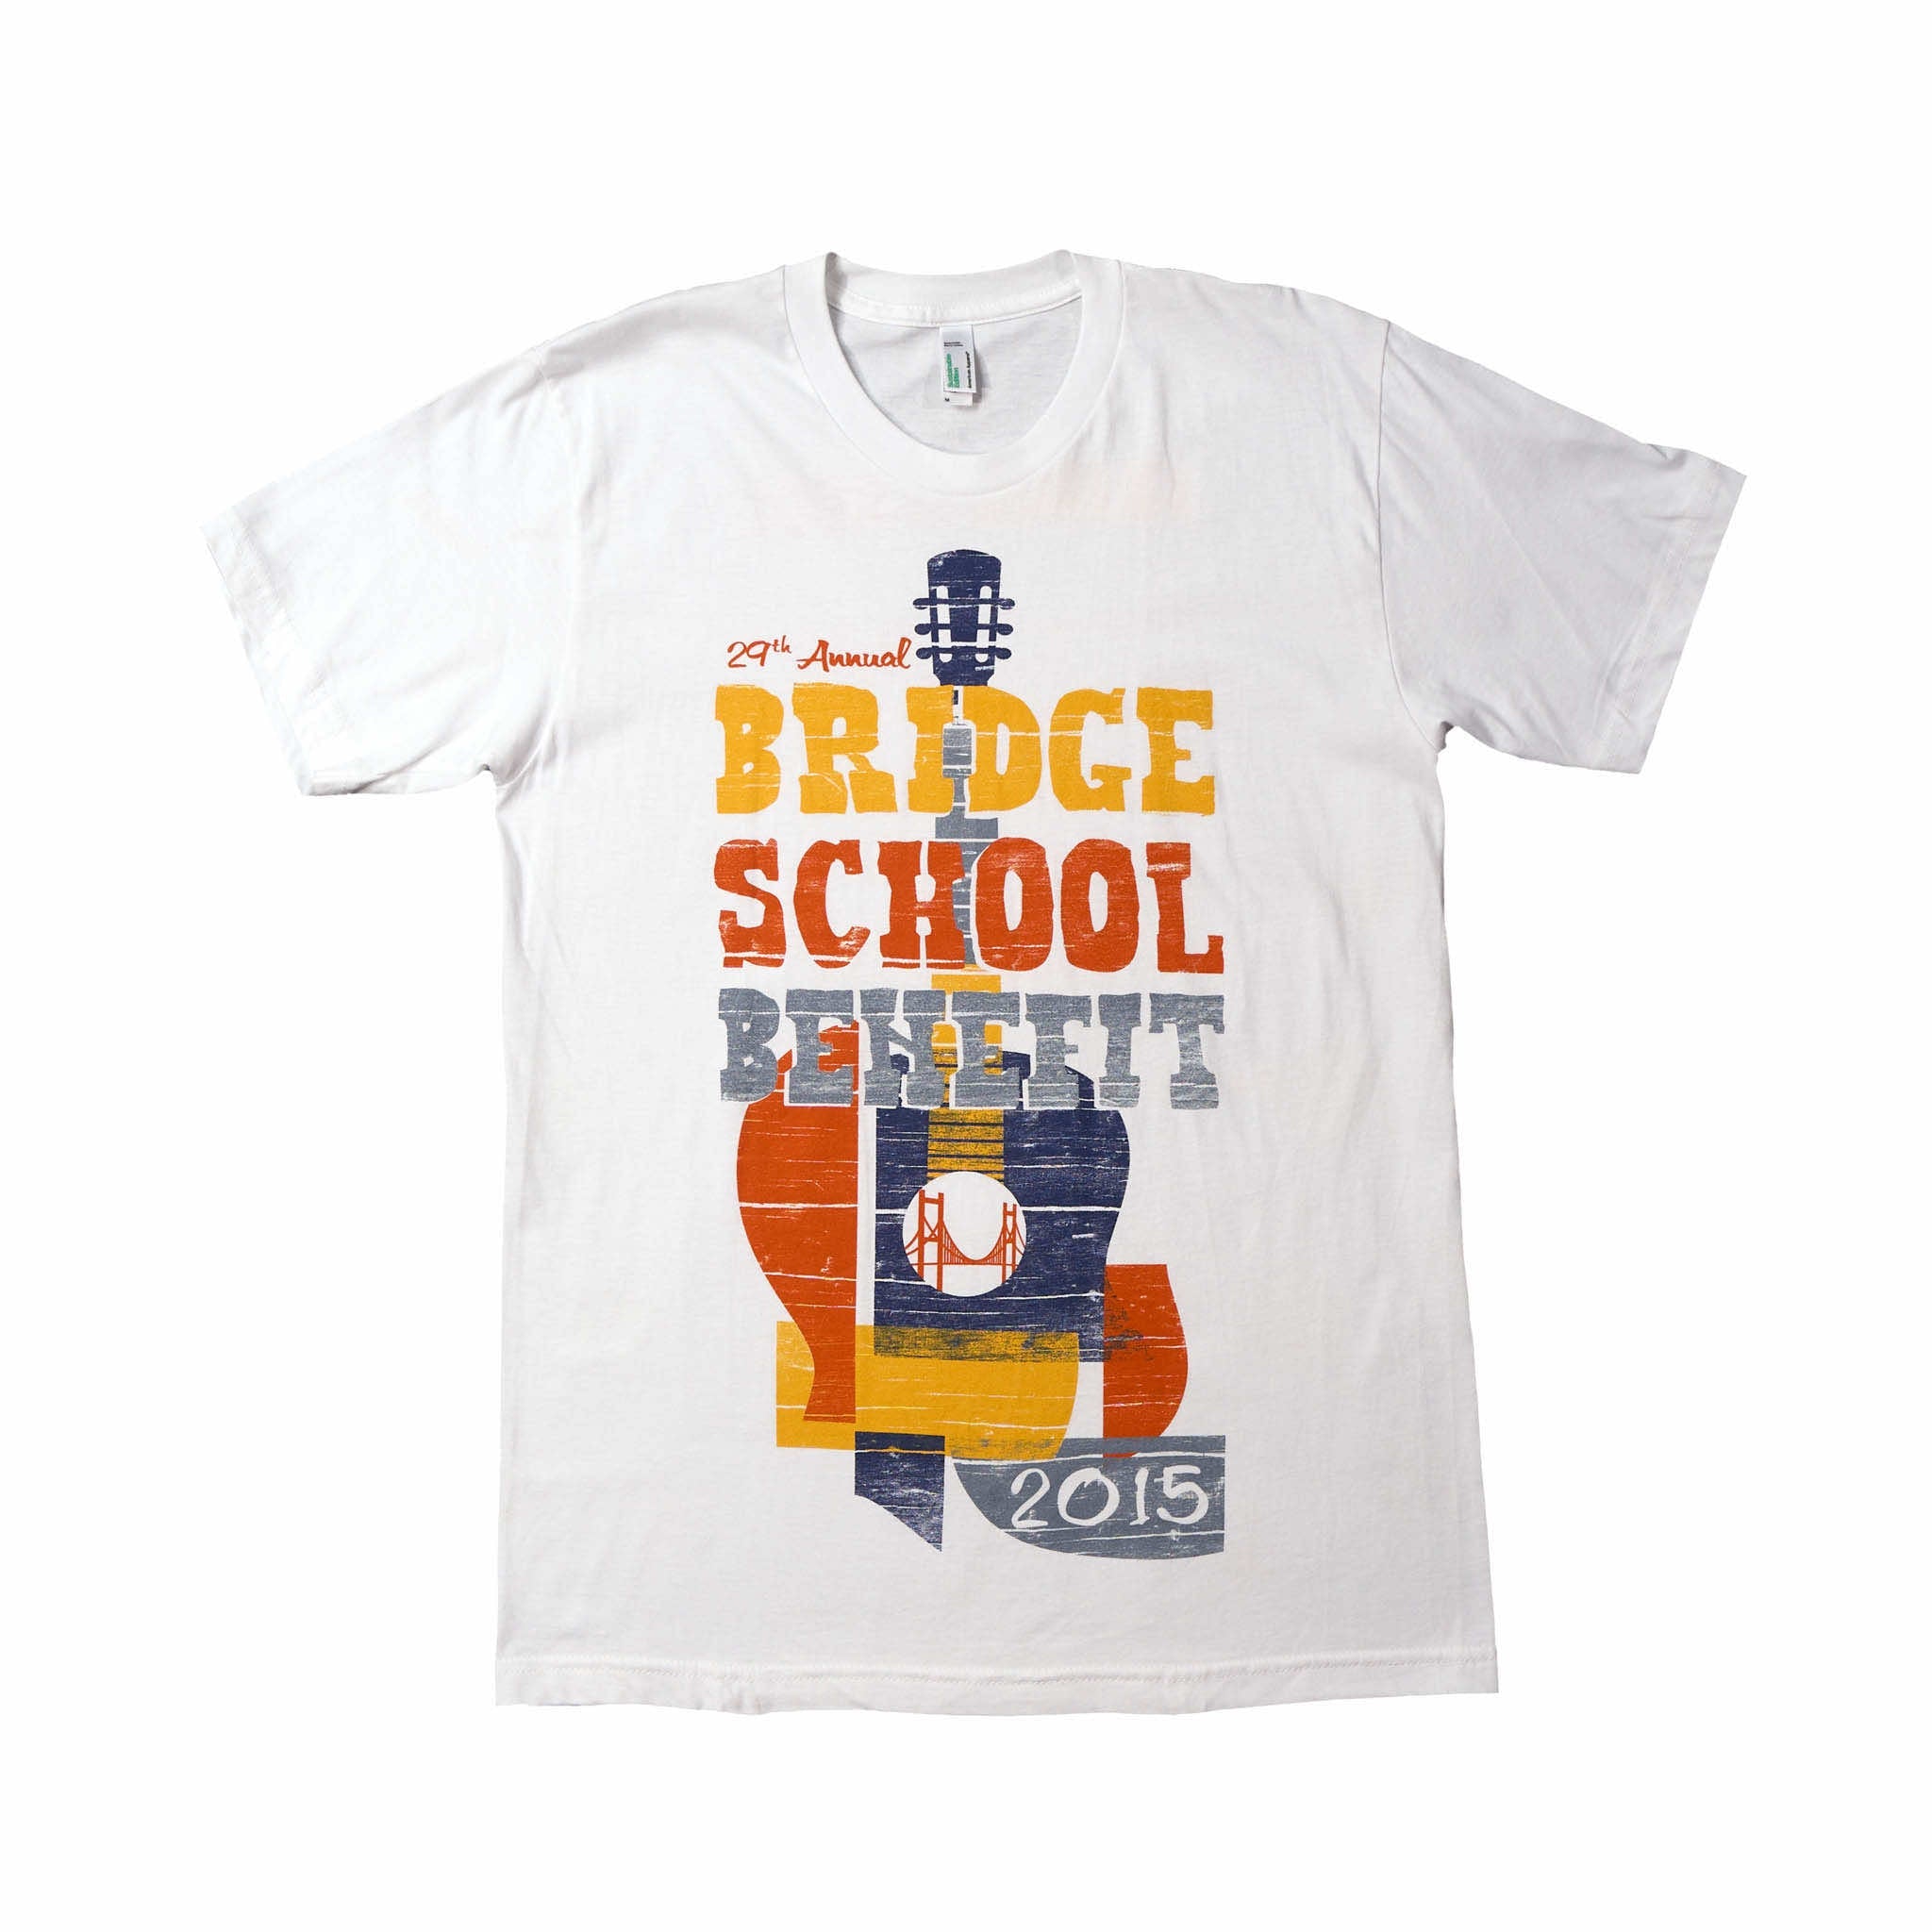 2015 - 29th Bridge School Benefit Concert Short Sleeve Tee